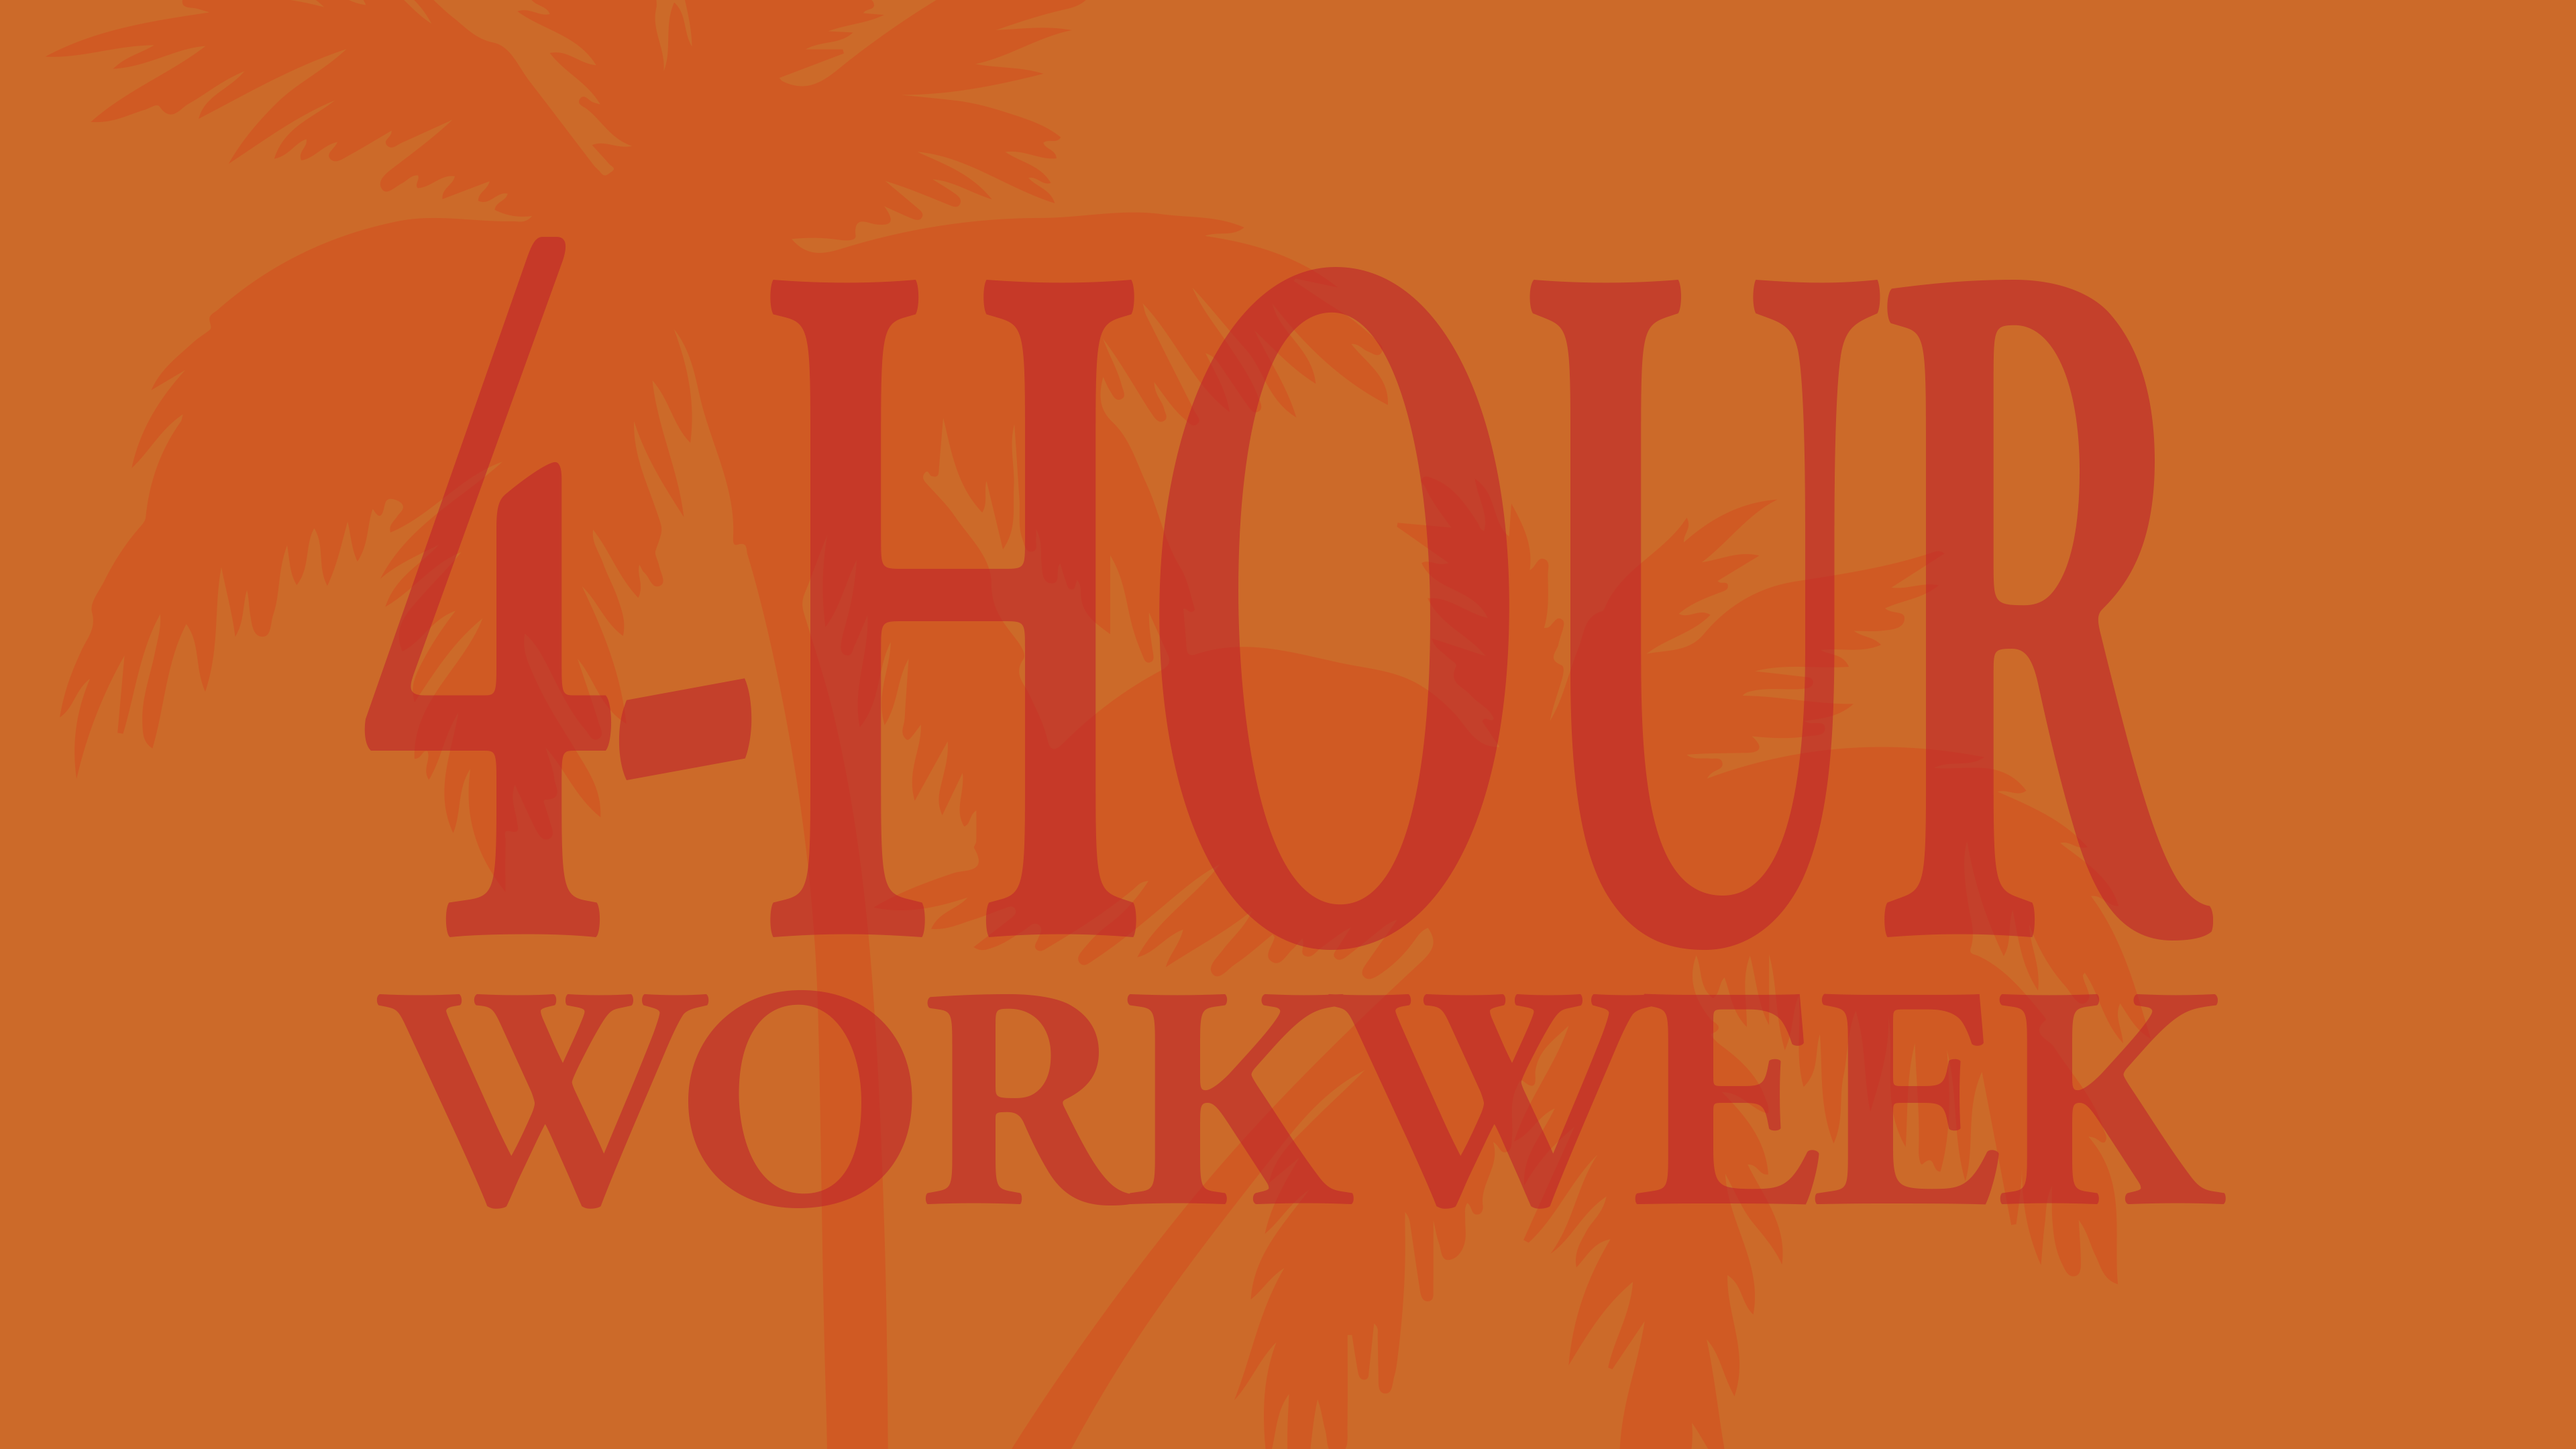 The 4-hour workweek 16x9v2